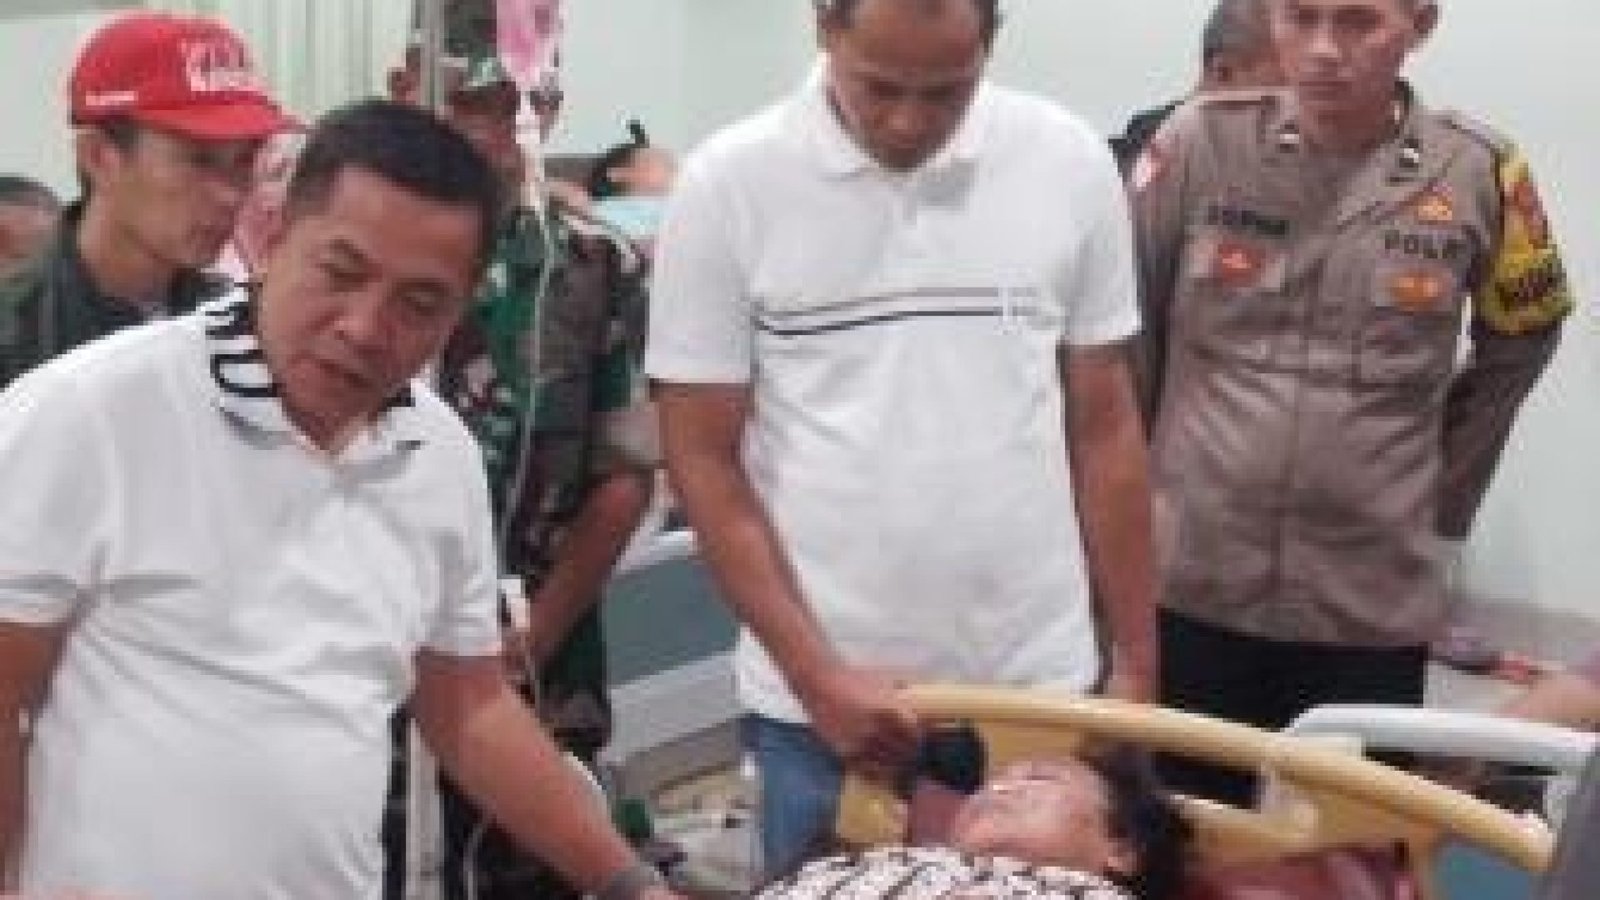 KORBAN KERACUNAN: Bupati Karawang Aep Syaepuloh di RS Rosela menjenguk korban keracunan gas klorin yang diproduksi pabrik caustik soda milik PT Pindo Deli 2. (Red/Mediaseruni)